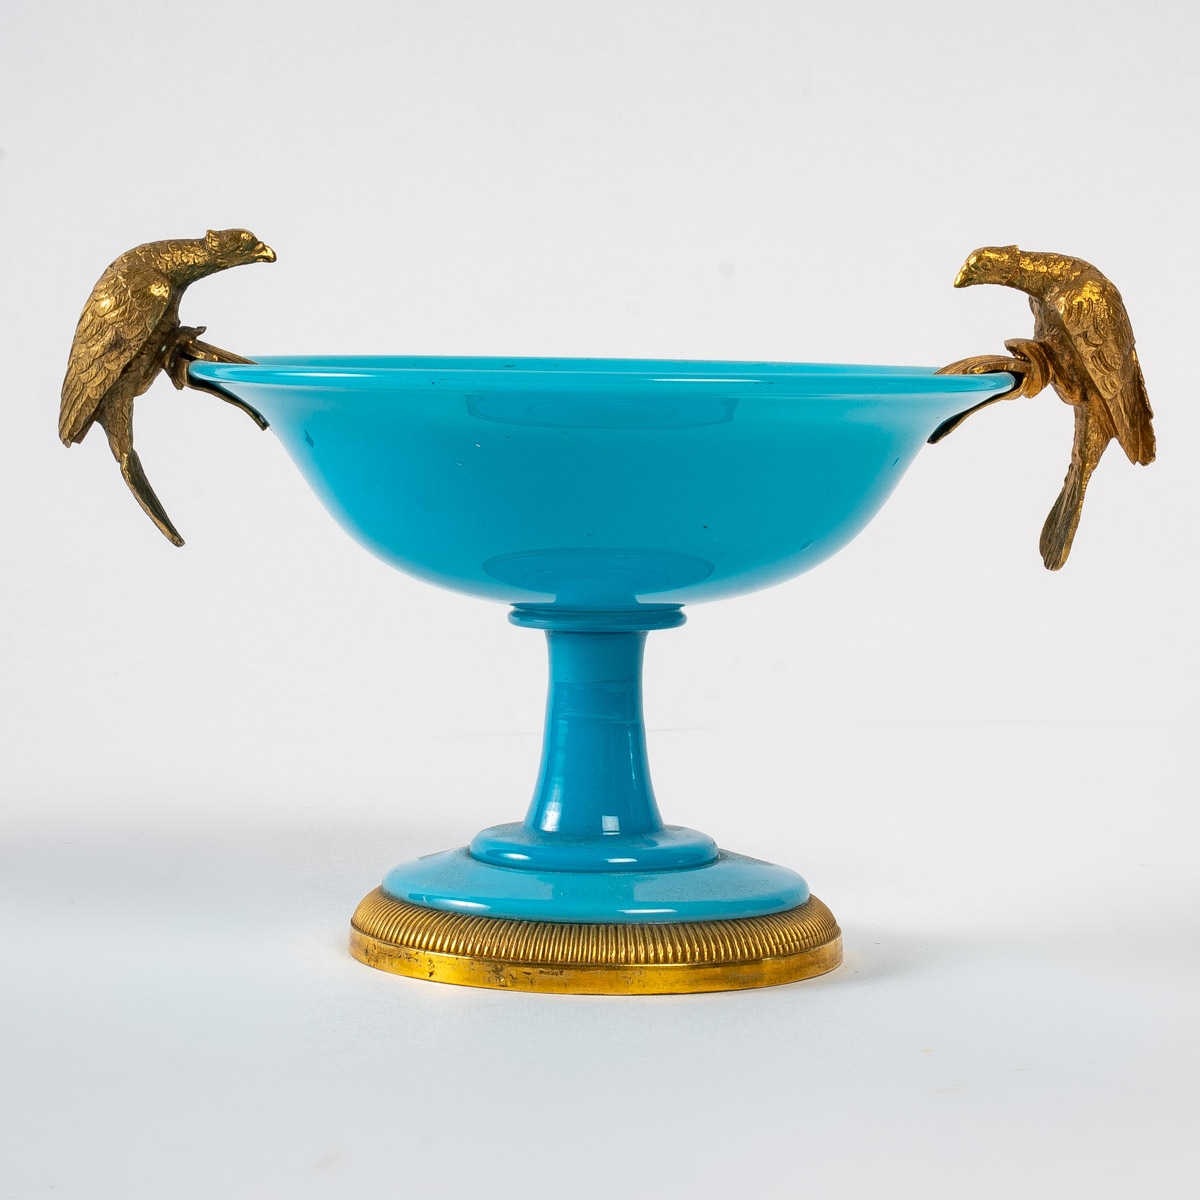 Coupe en opaline turquoise en bronze doré, XIXème siècle||||||